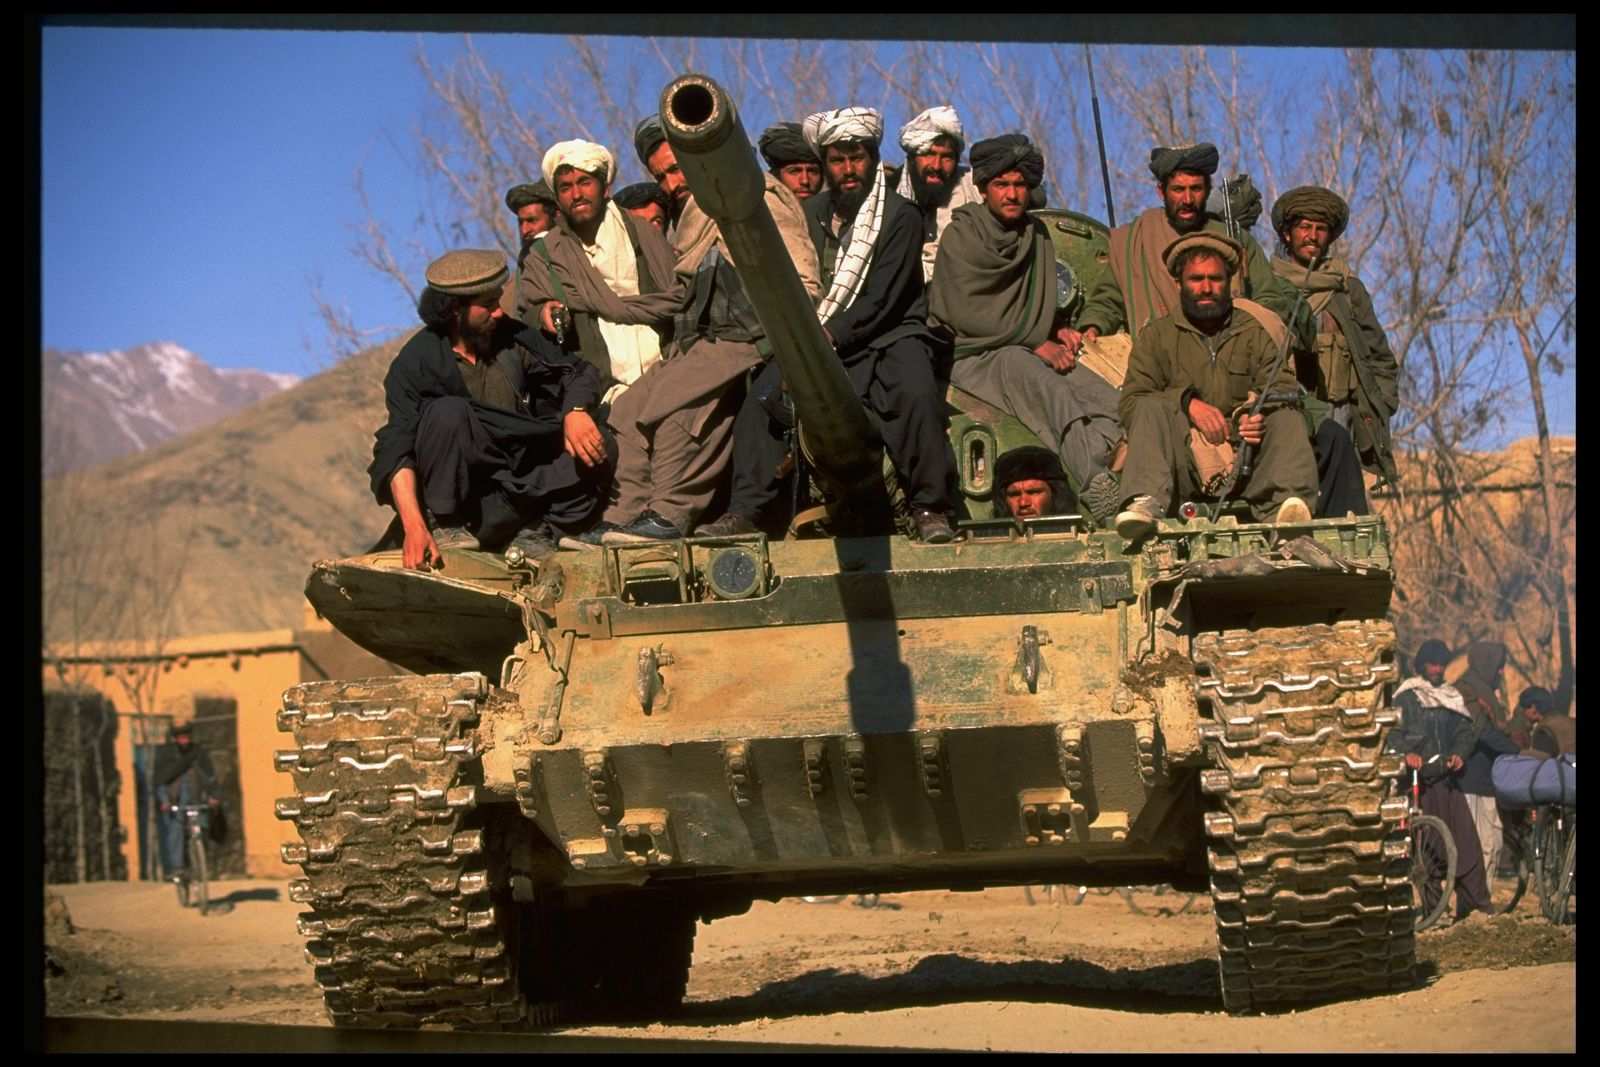 مسلحون من حركة طالبان الأفغانية أعلى دبابة بالقرب من العاصمة الأفغانية كابول - 1 فبراير 1995 - Getty Images